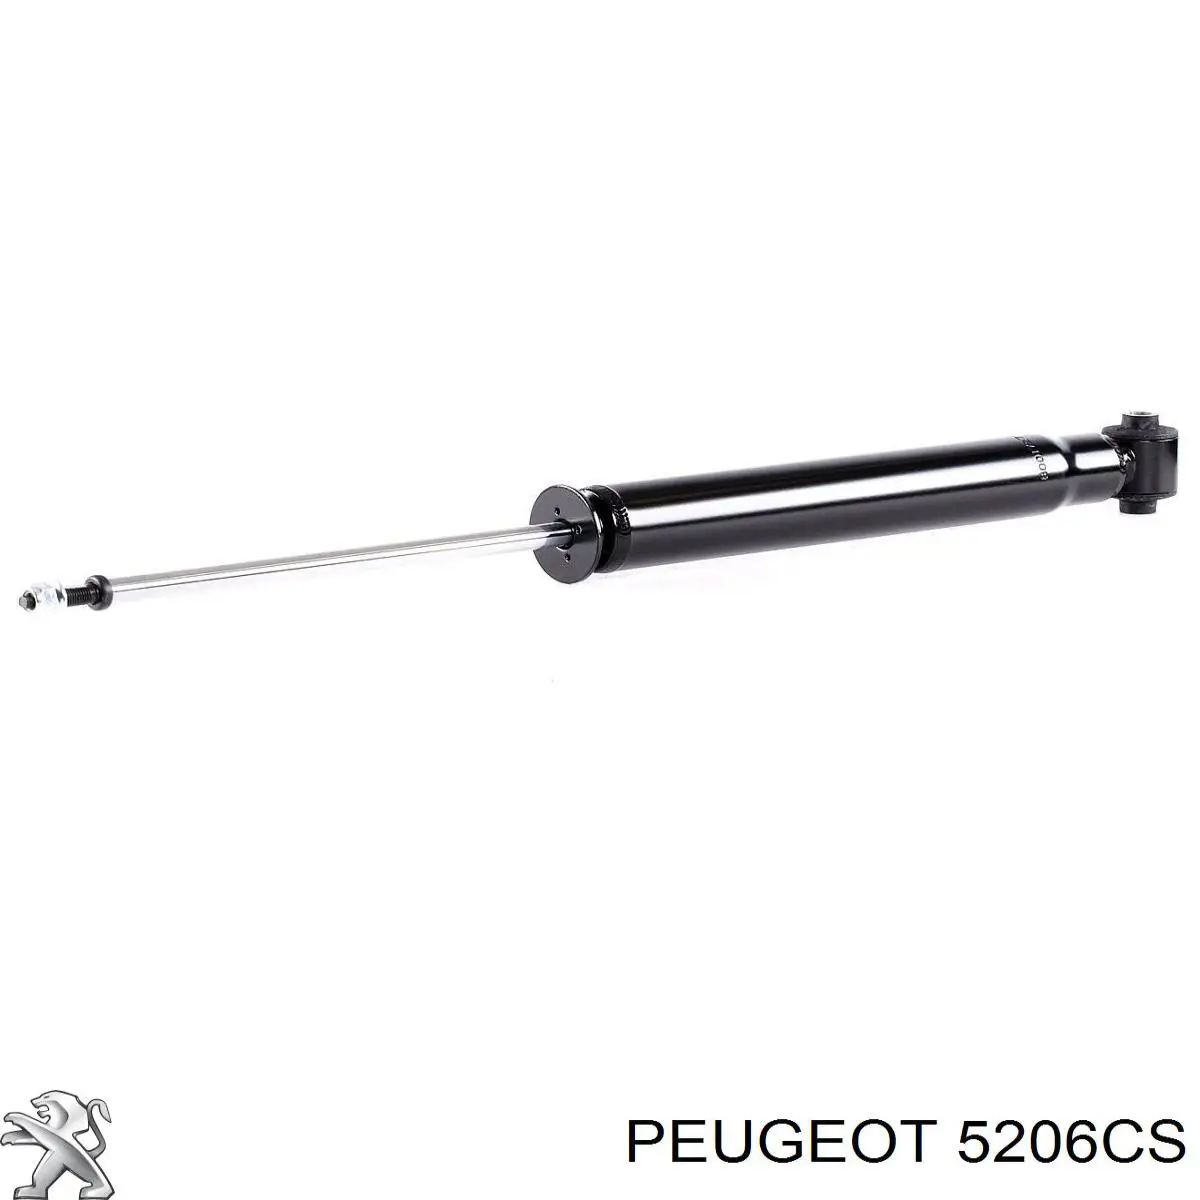 5206CS Peugeot/Citroen amortiguador trasero